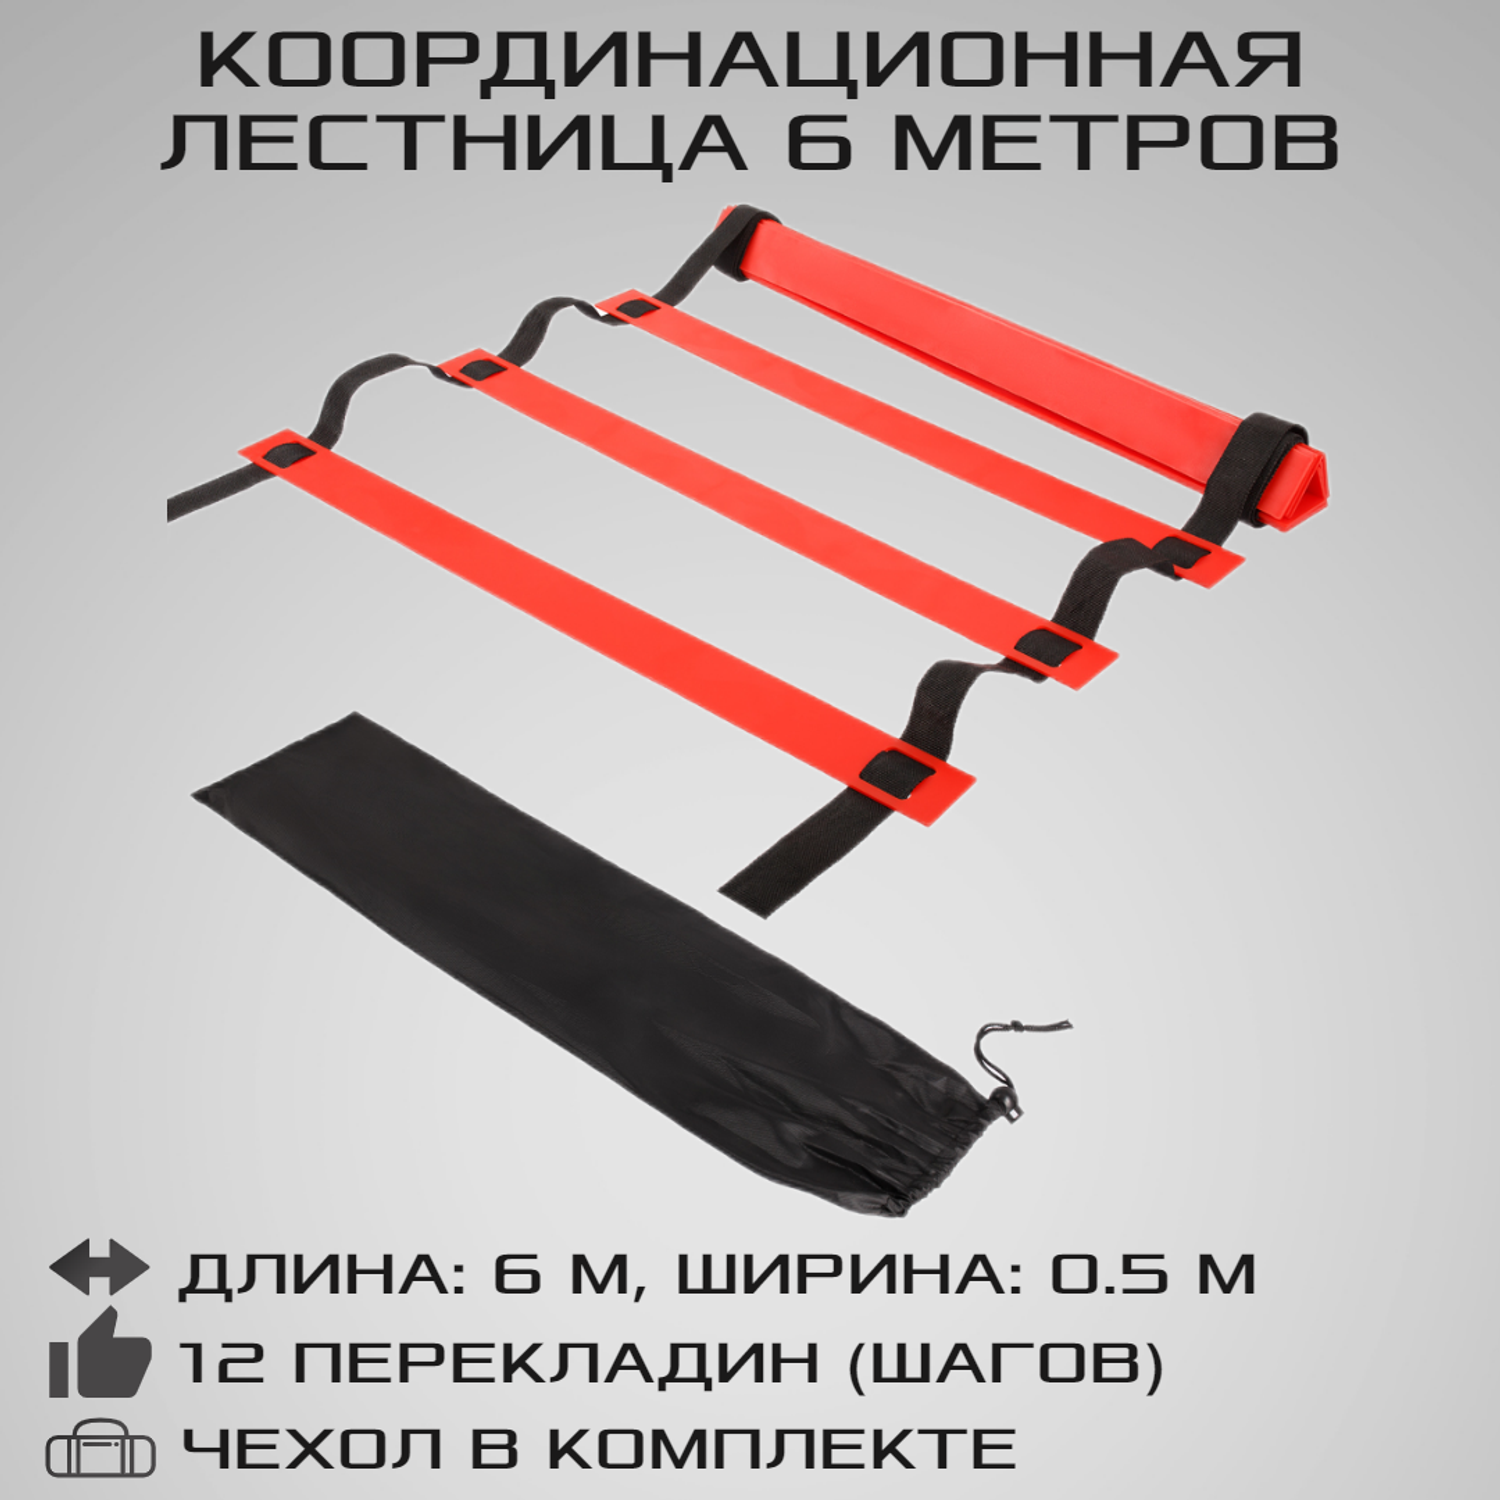 Координационная лестница STRONG BODY 6 метров 12 перекладин черно-красная - фото 1